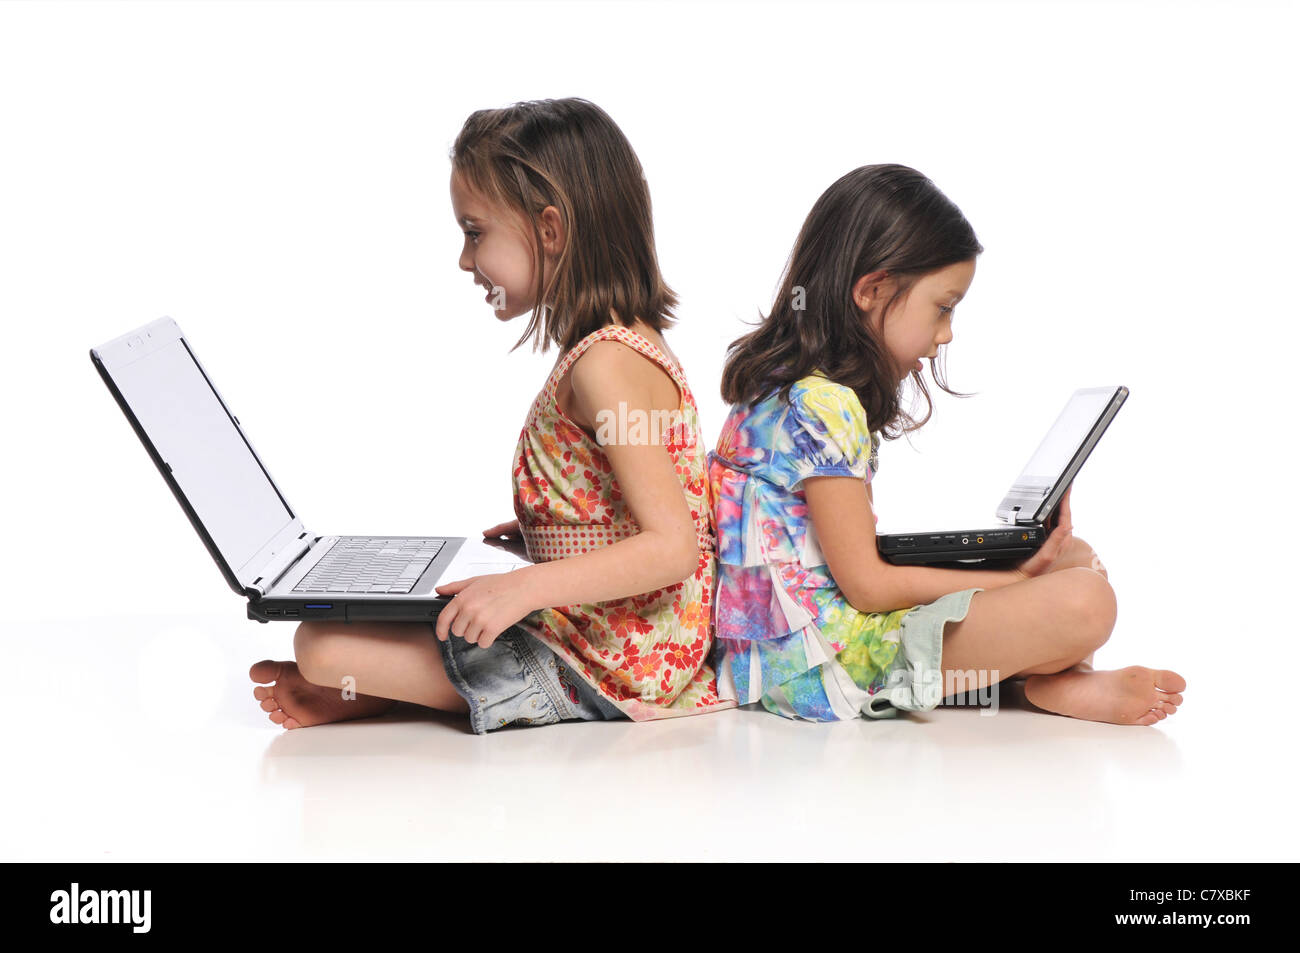 Zwei kleine Mädchen mit Laptop-Computern auf einem weißen Hintergrund isoliert Stockfoto